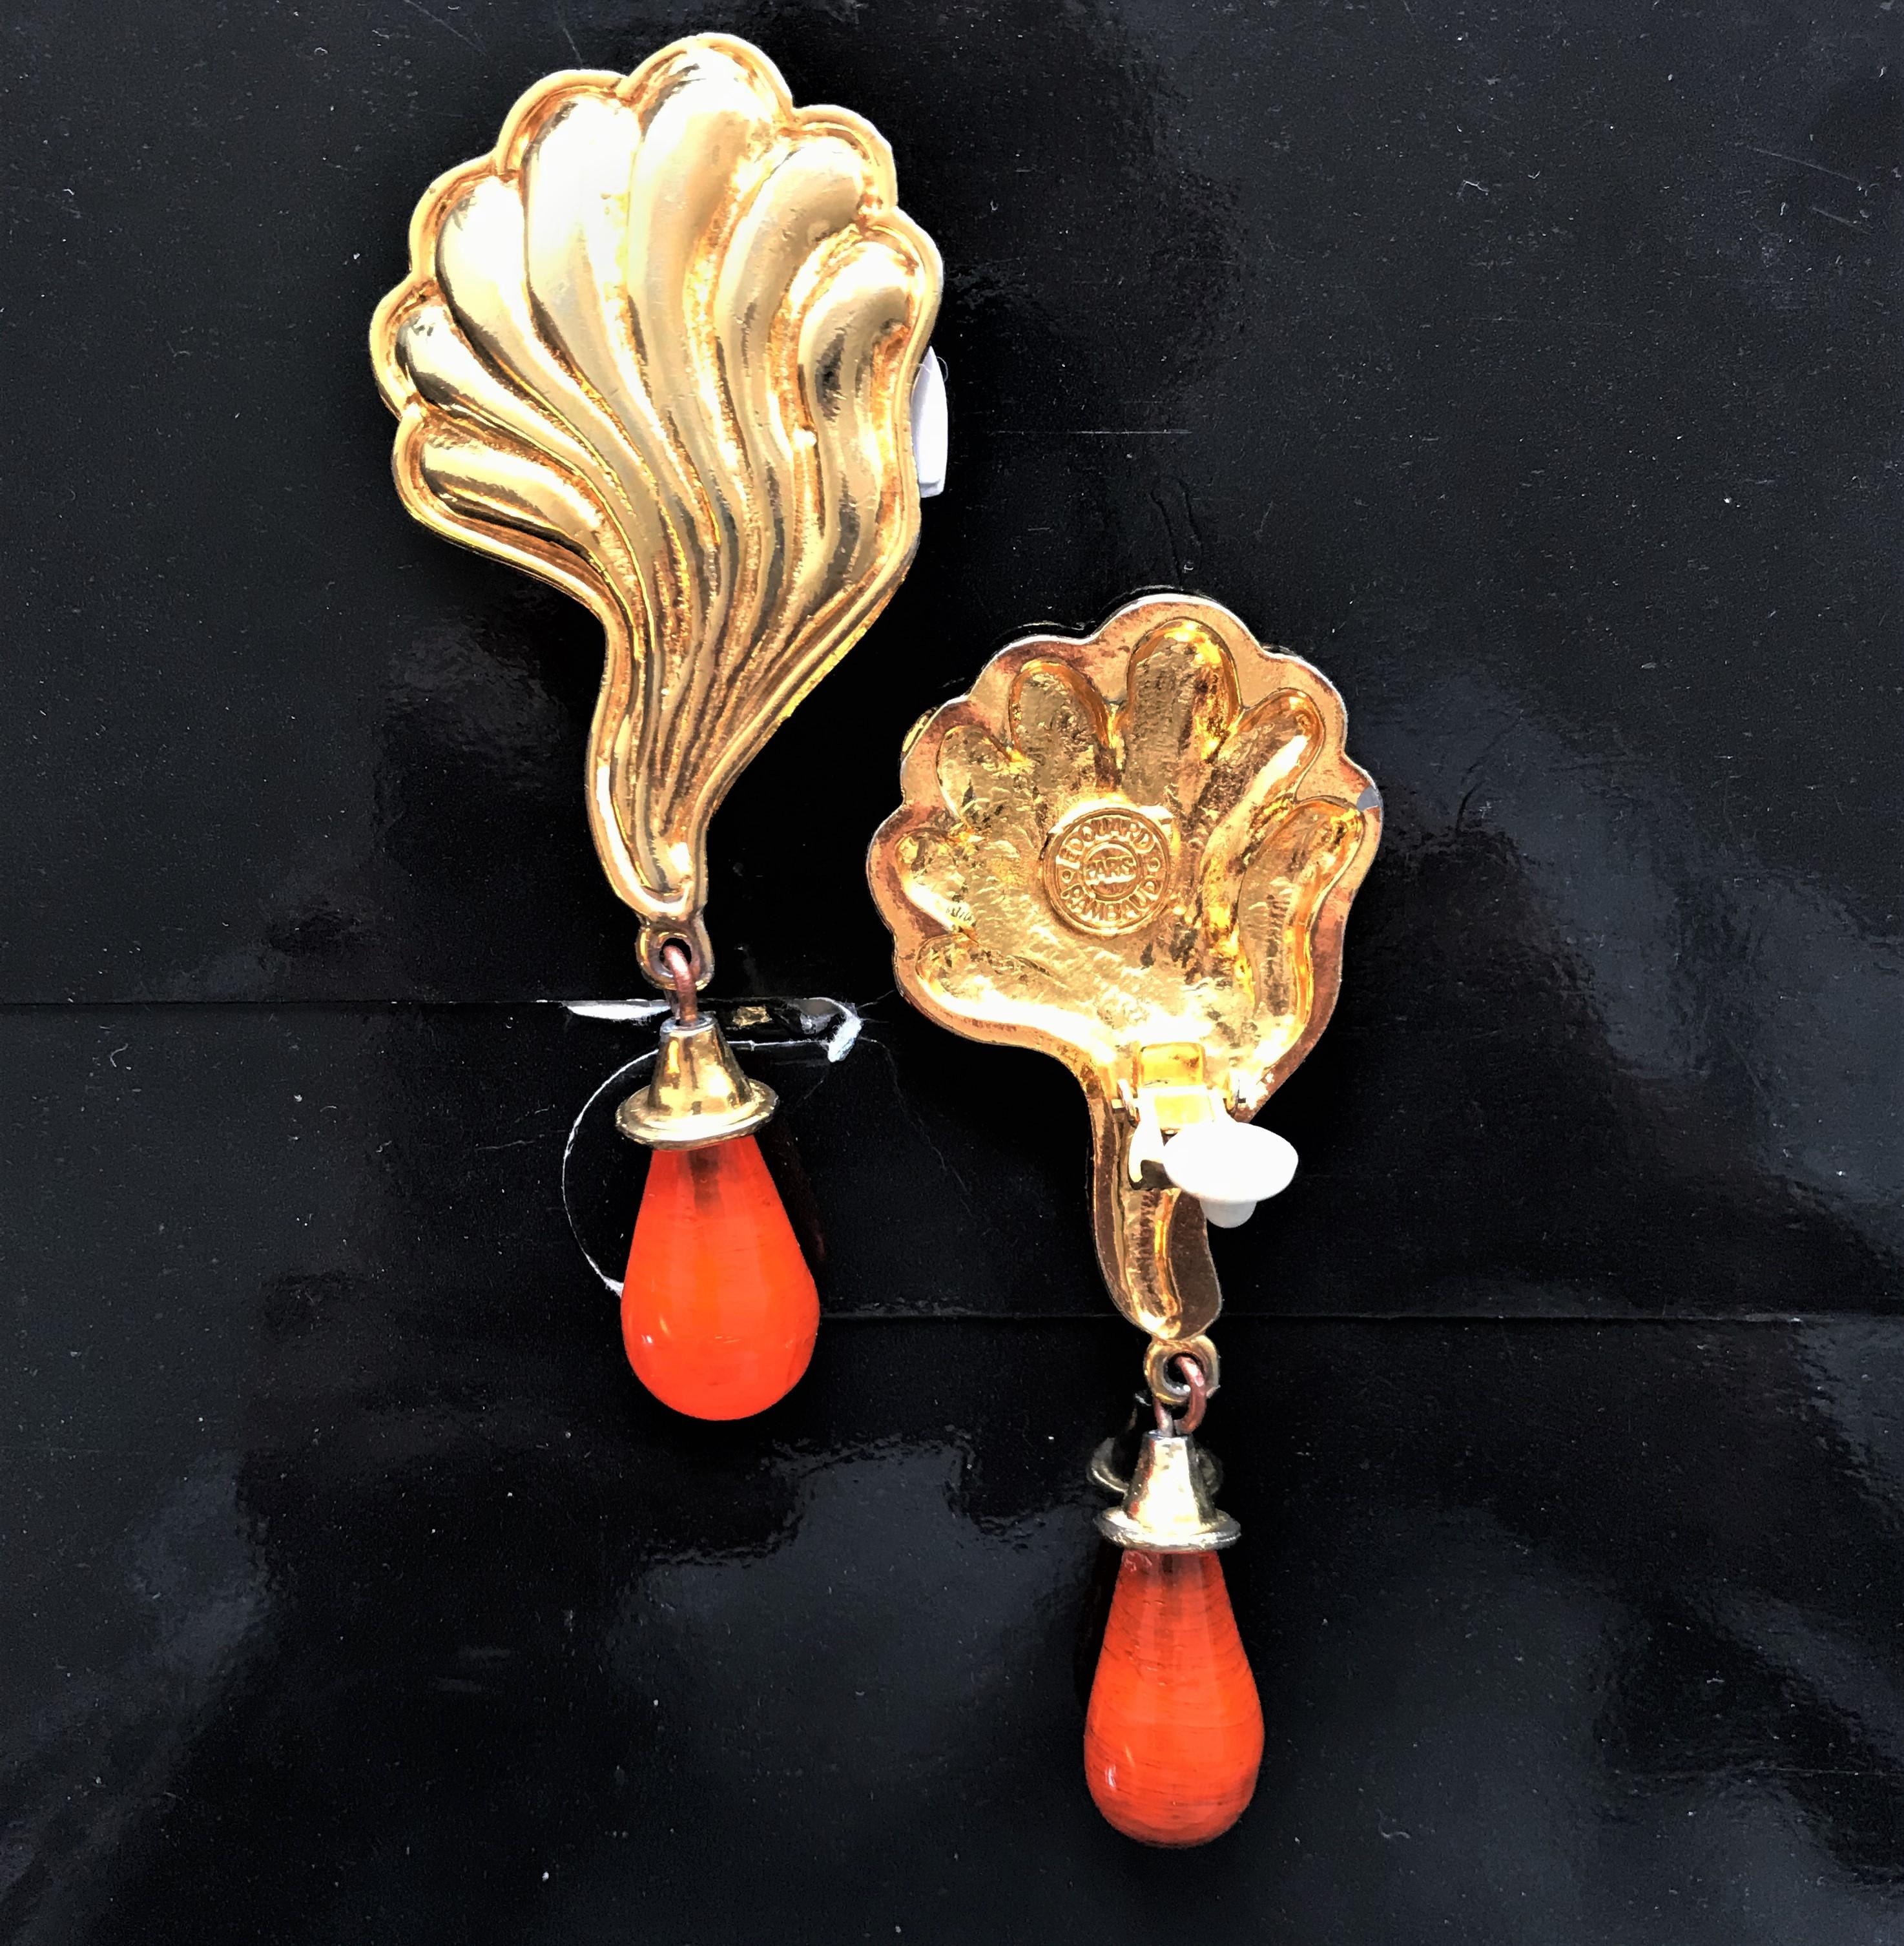 Ein sehr stilvoller Ohrclip von Eduard Ramboud Paris in Form eines muschelförmigen Blattes mit aufgesetzten orangefarbenen Glastropfen.
Maße: Gesamtlänge 10 cm, orangefarbene Tropfen 3 cm, Breite 4 cm.
Bitte beachten Sie, dass ein orangefarbener